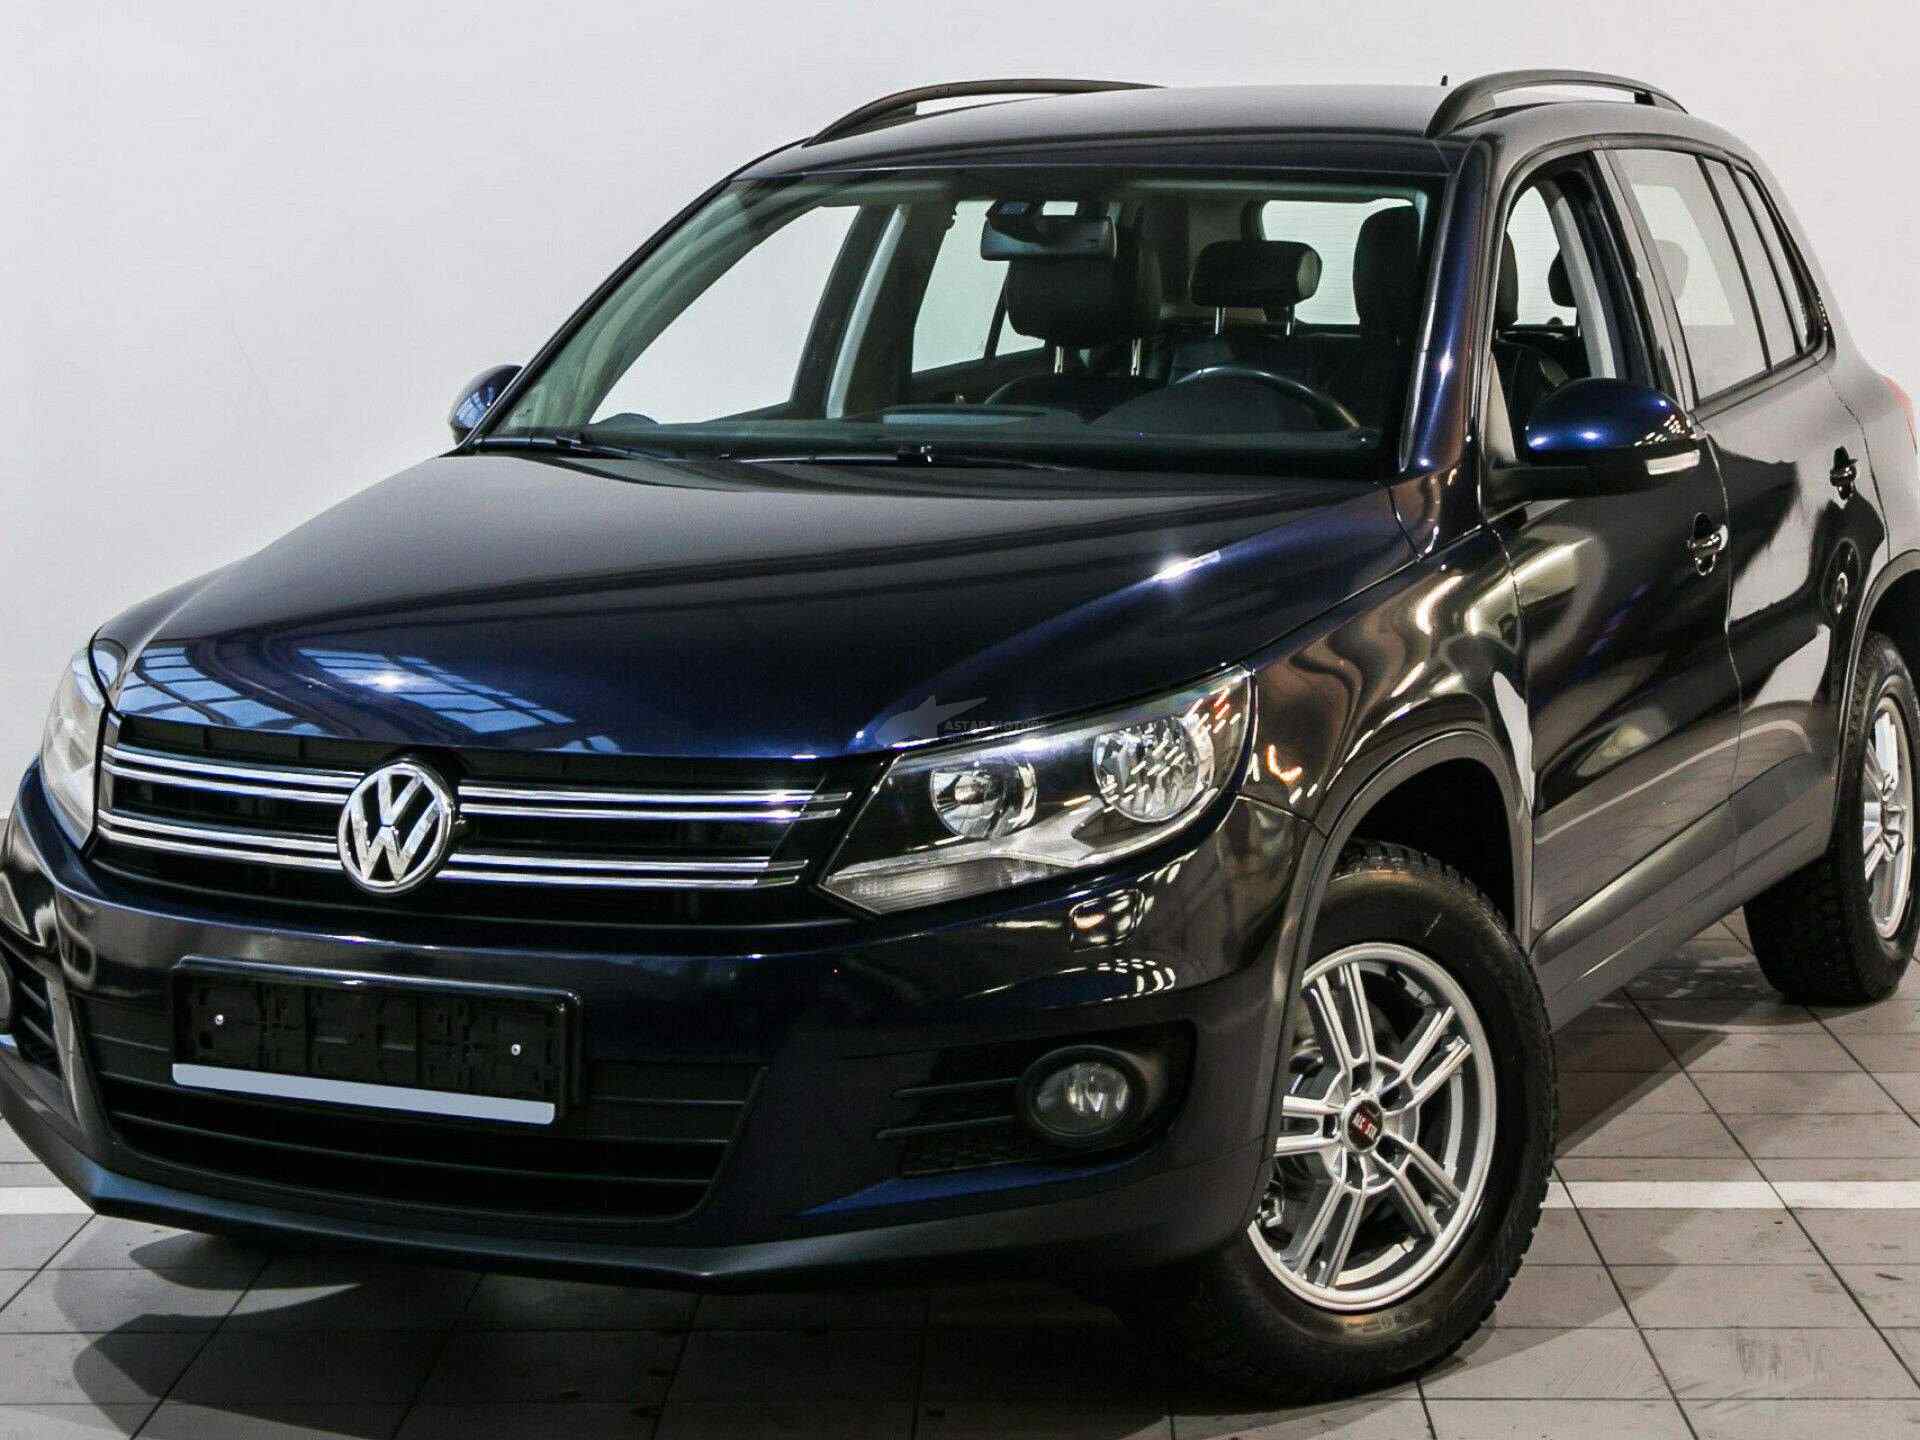 Volkswagen Tiguan 2012 легковой универсал